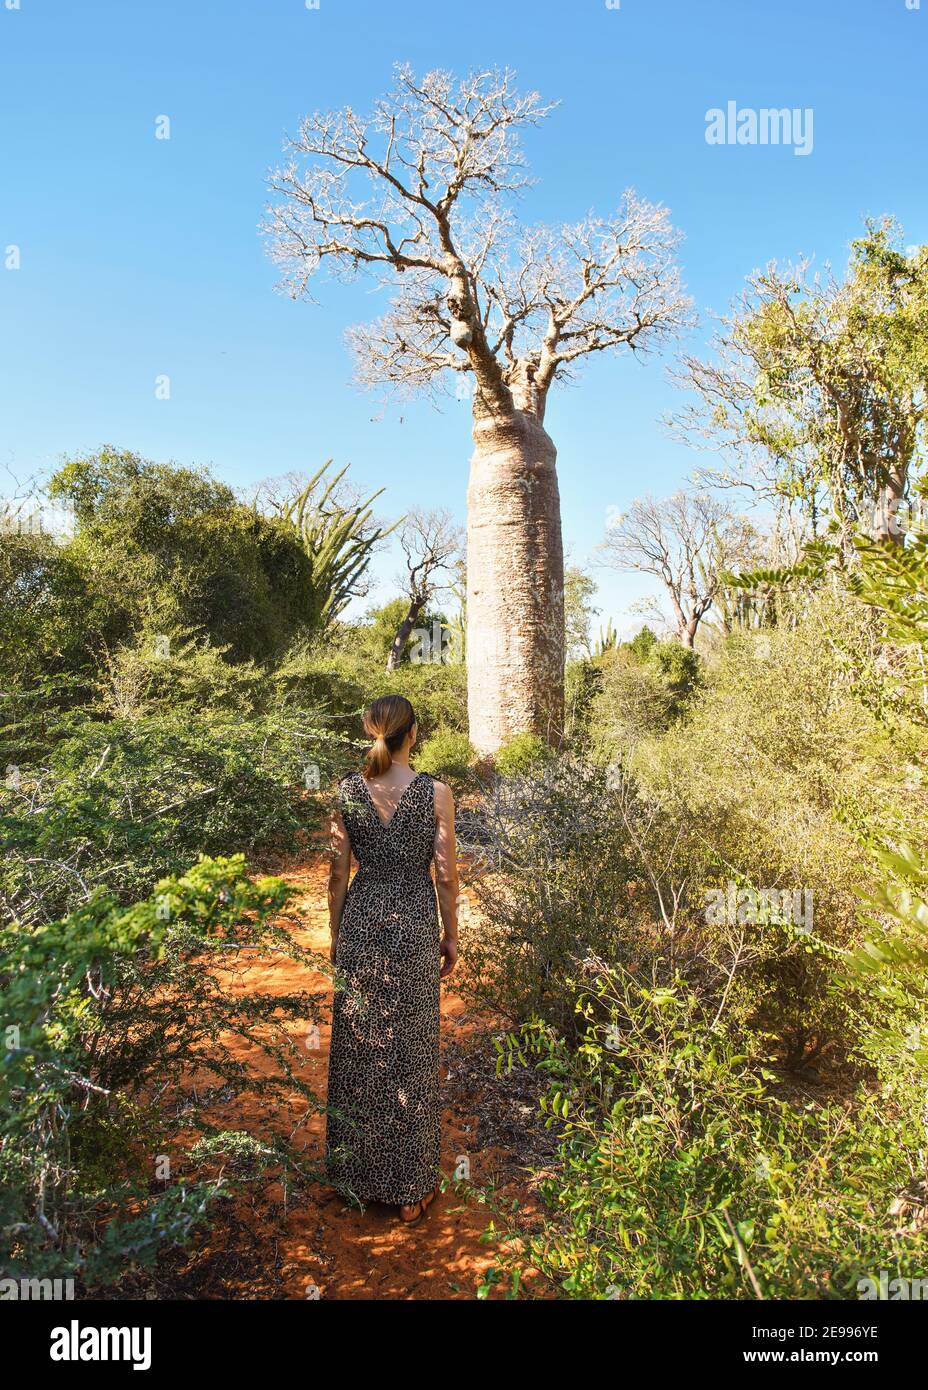 Femme portant une robe avec un motif animal marchant vers l'arbre de baobab, vue de derrière, buissons et herbe poussant sur un sol rouge poussiéreux Banque D'Images